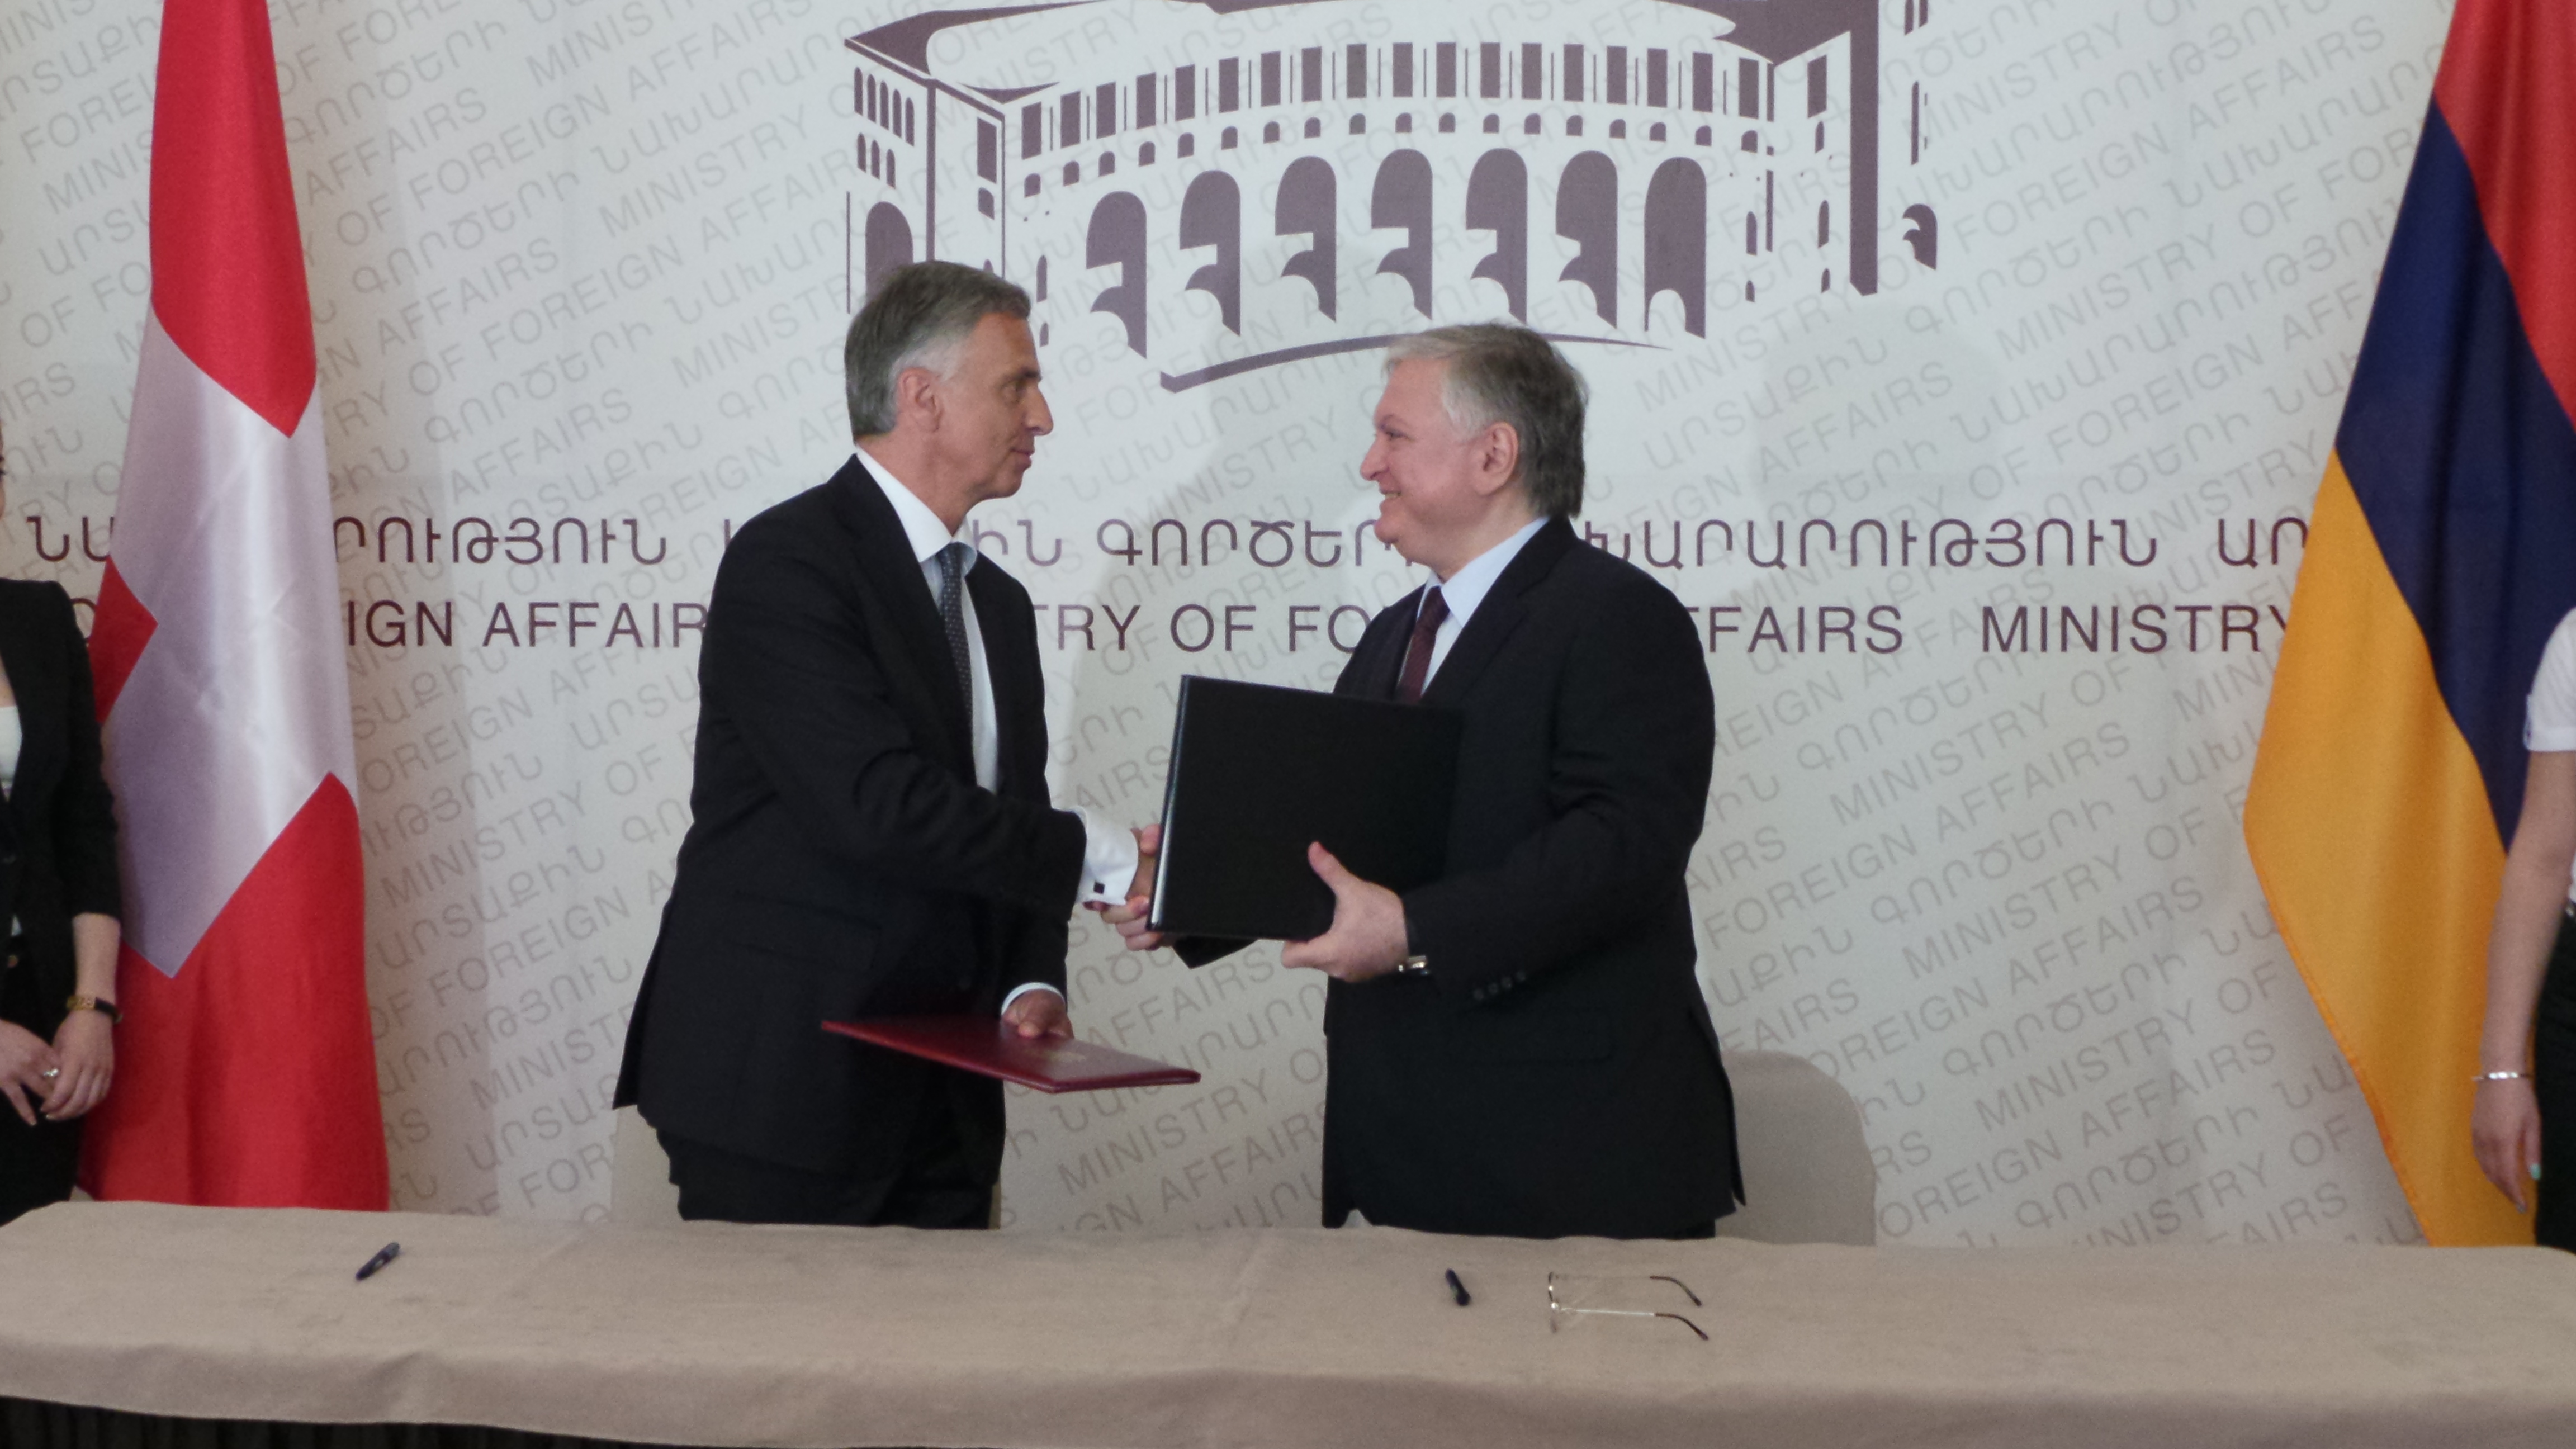 Bundespräsident Didier Burkhalter und der armenische Aussenminister Edouard Nalbandian unterzeichnen eine Vereinbarung über die Zusammenarbeit der Aussenministerien der Schweiz und Armeniens.